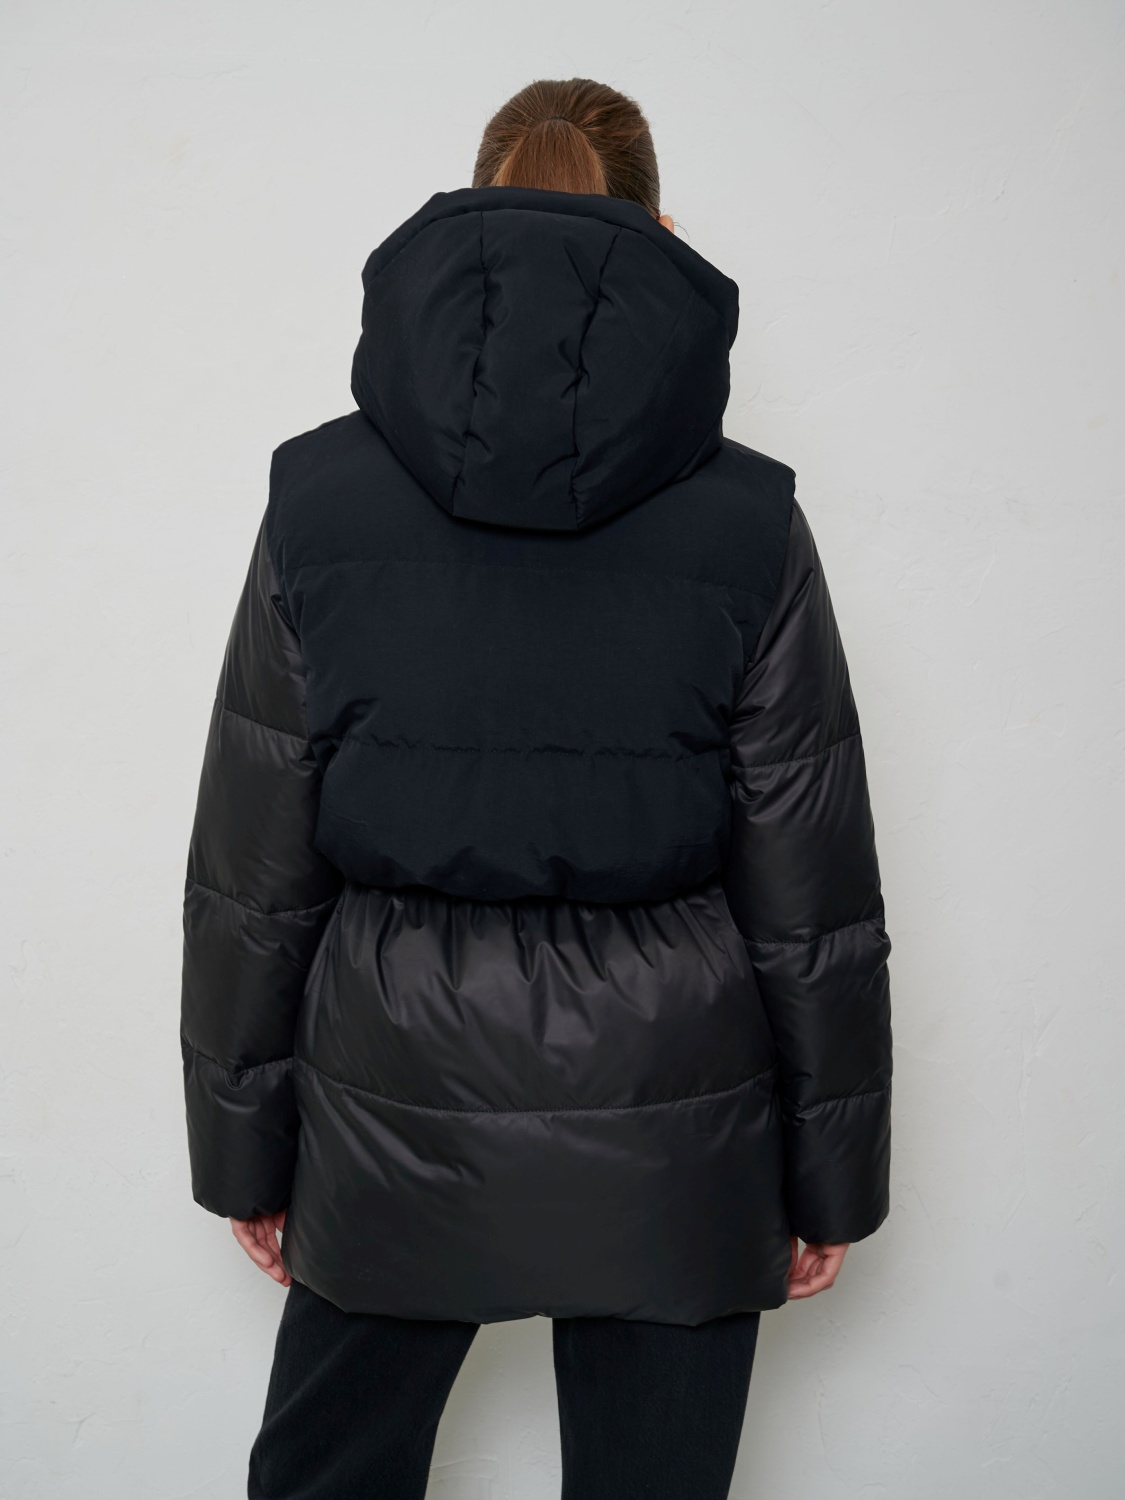 Куртка COMBI (Черный, L, 00623)